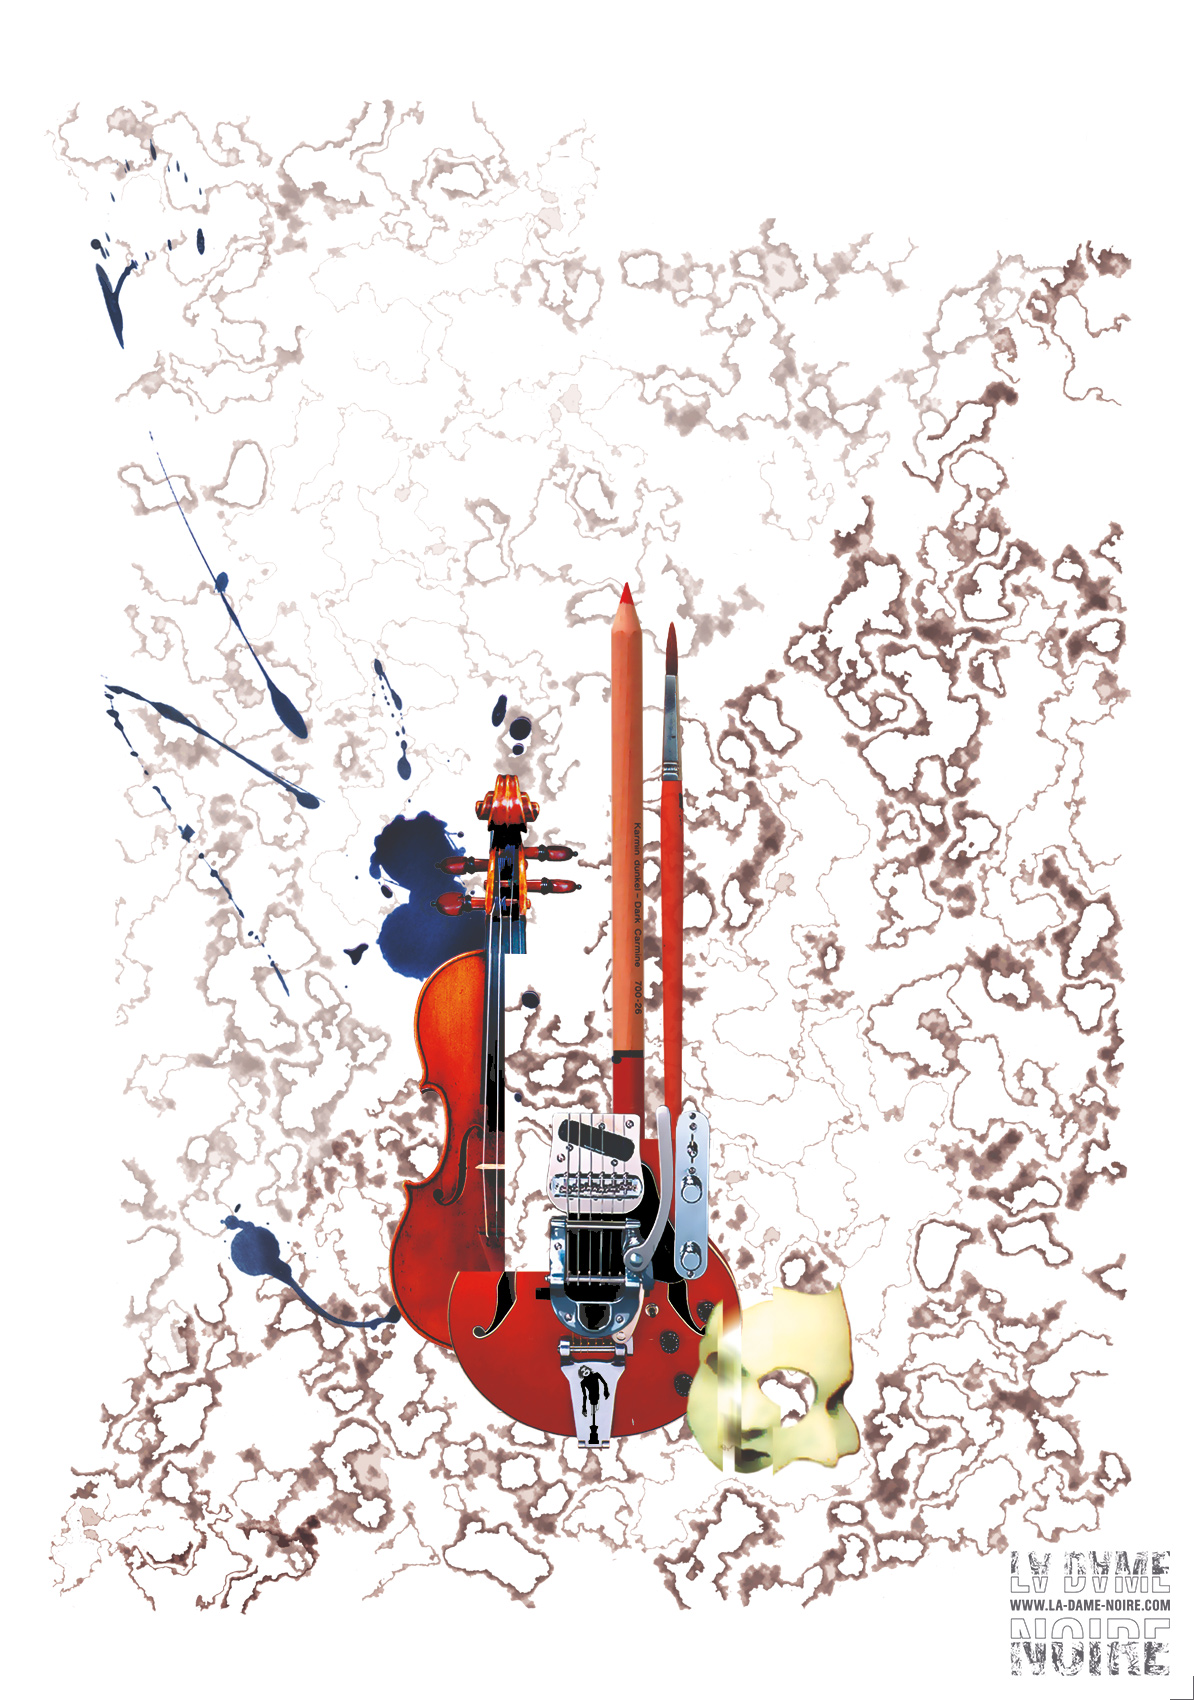 Assemblage graphique d'un violon, d'une guitare, d'un masque, d'un pinceau et d'un crayon